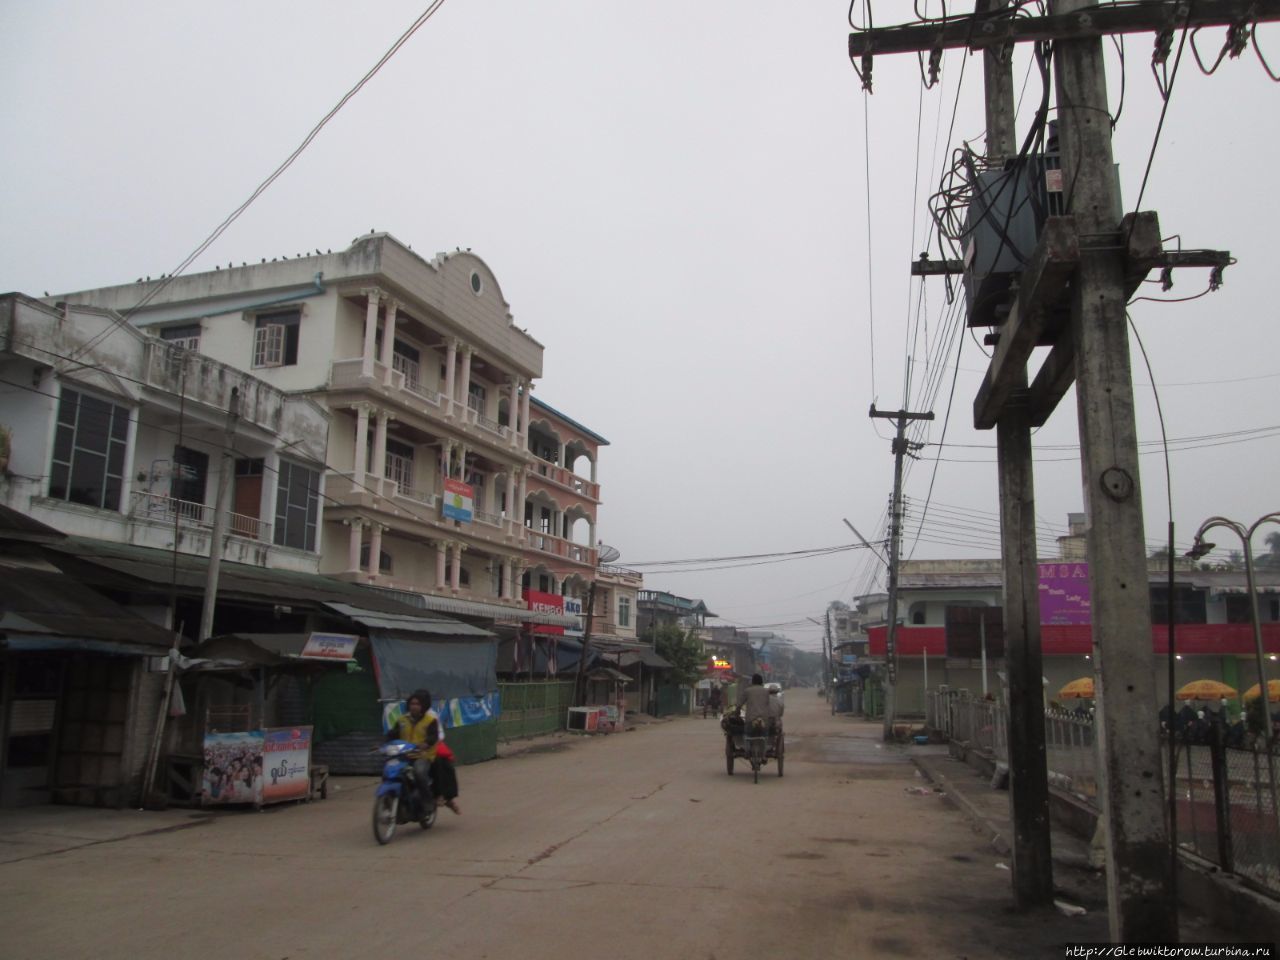 Прогулка по приграничному городу в 6 утра Мьявадди, Мьянма